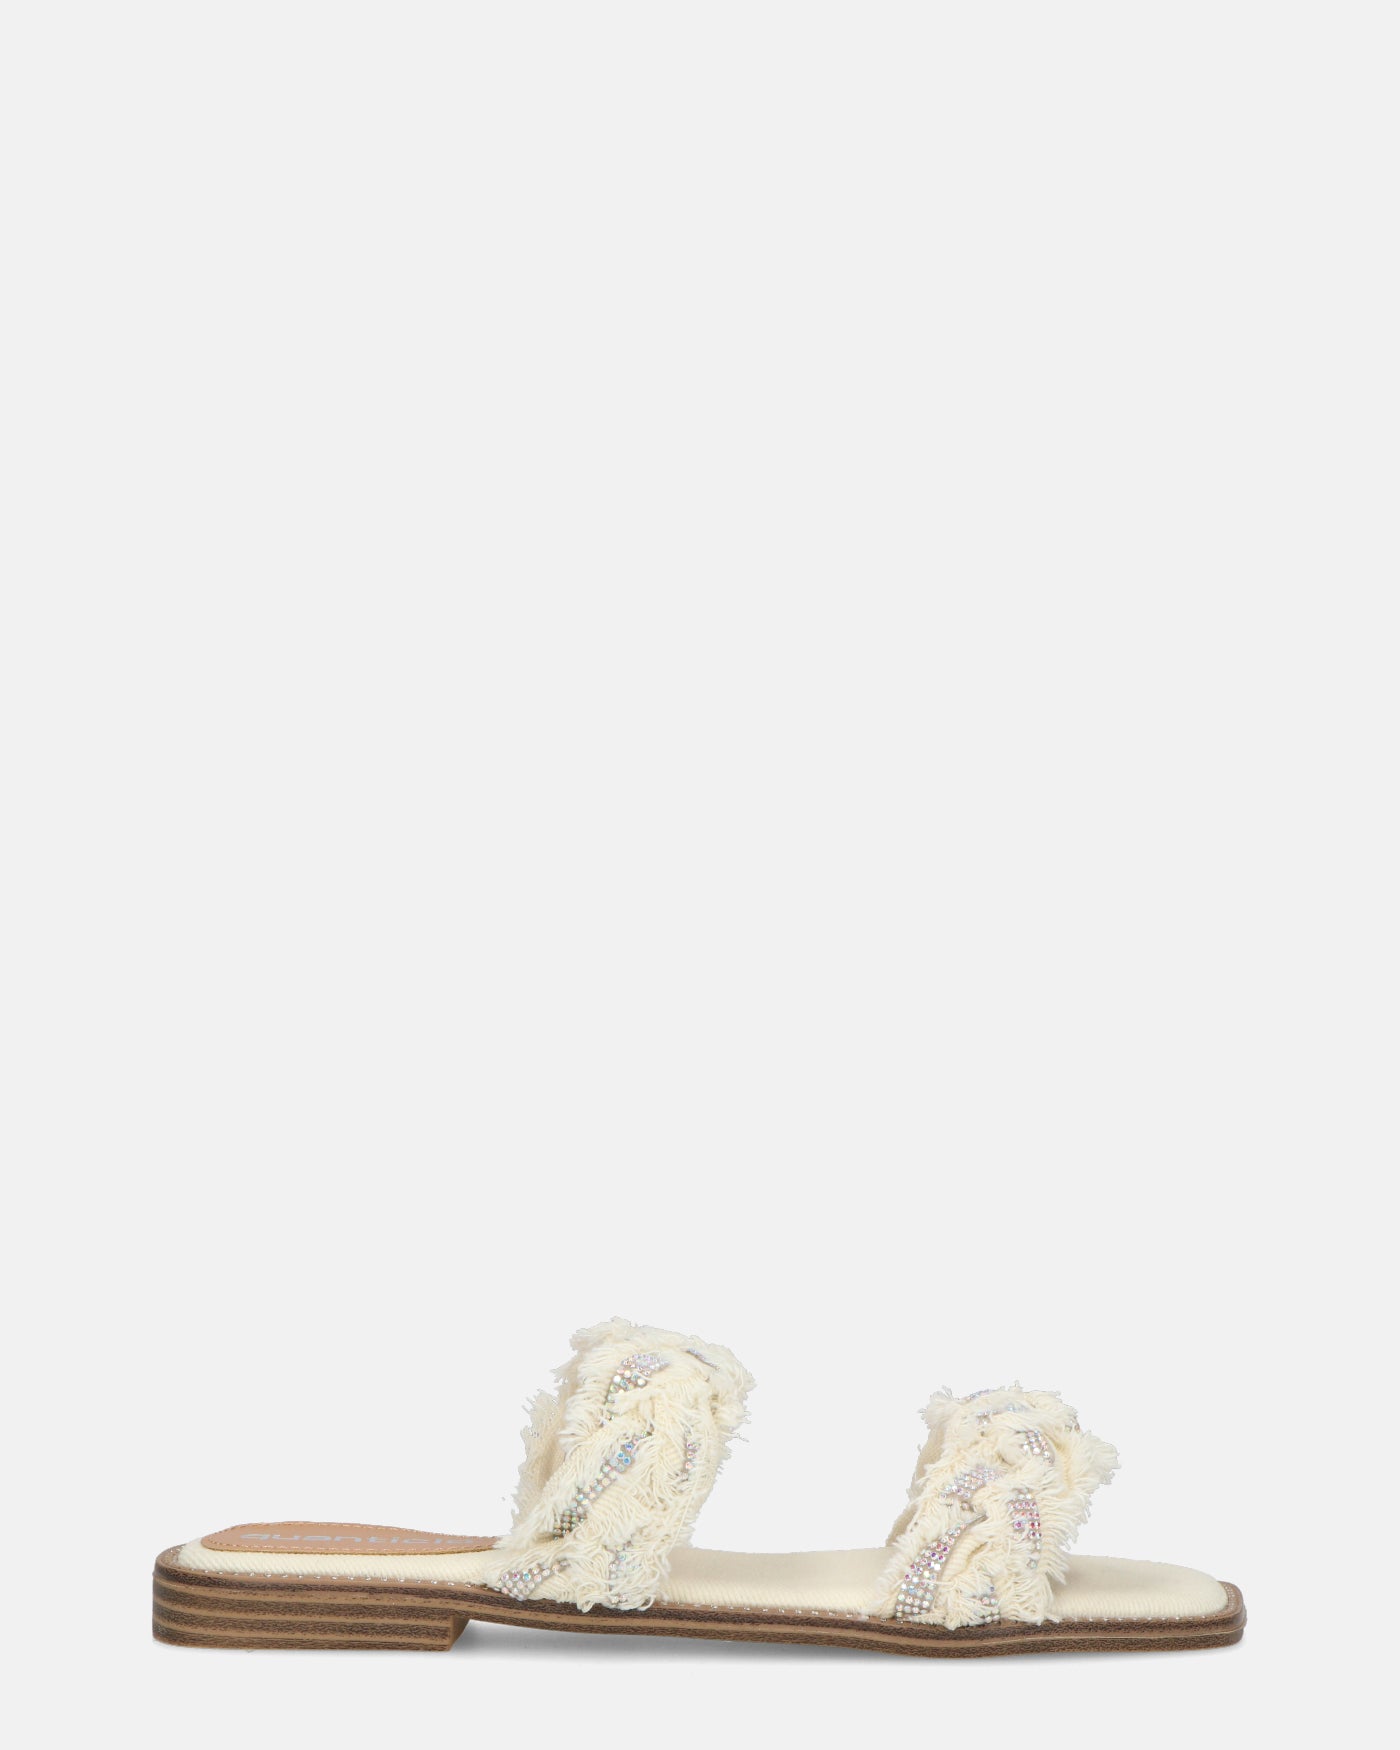 KALI - sandalias de tela beige claro con pedrería